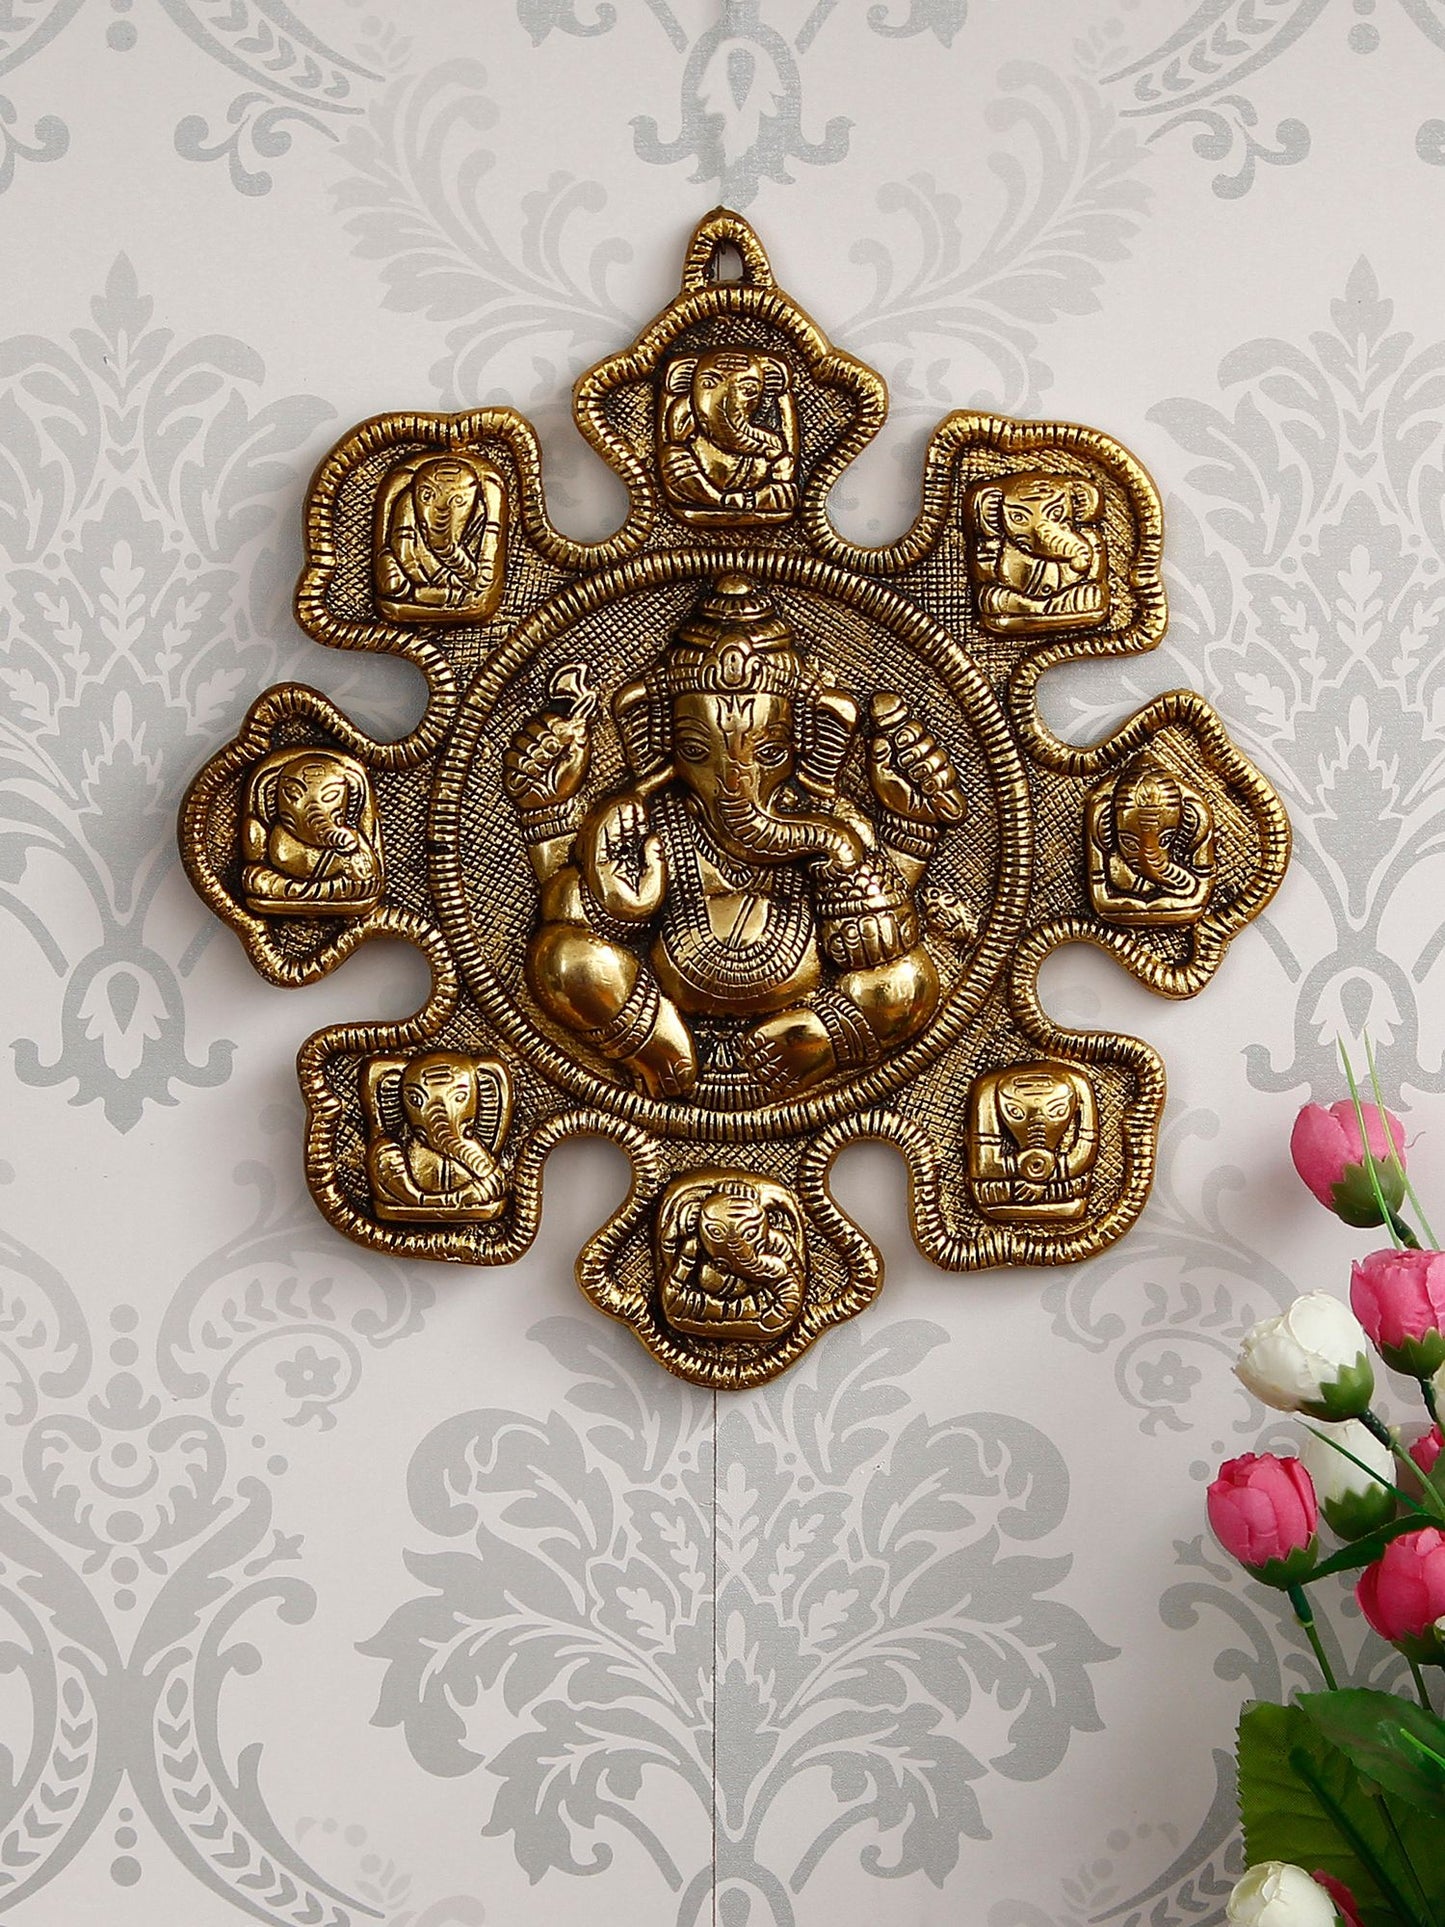 eCraftIndia 9 variants of Lord Ganesha Golden Metal Wall hanging